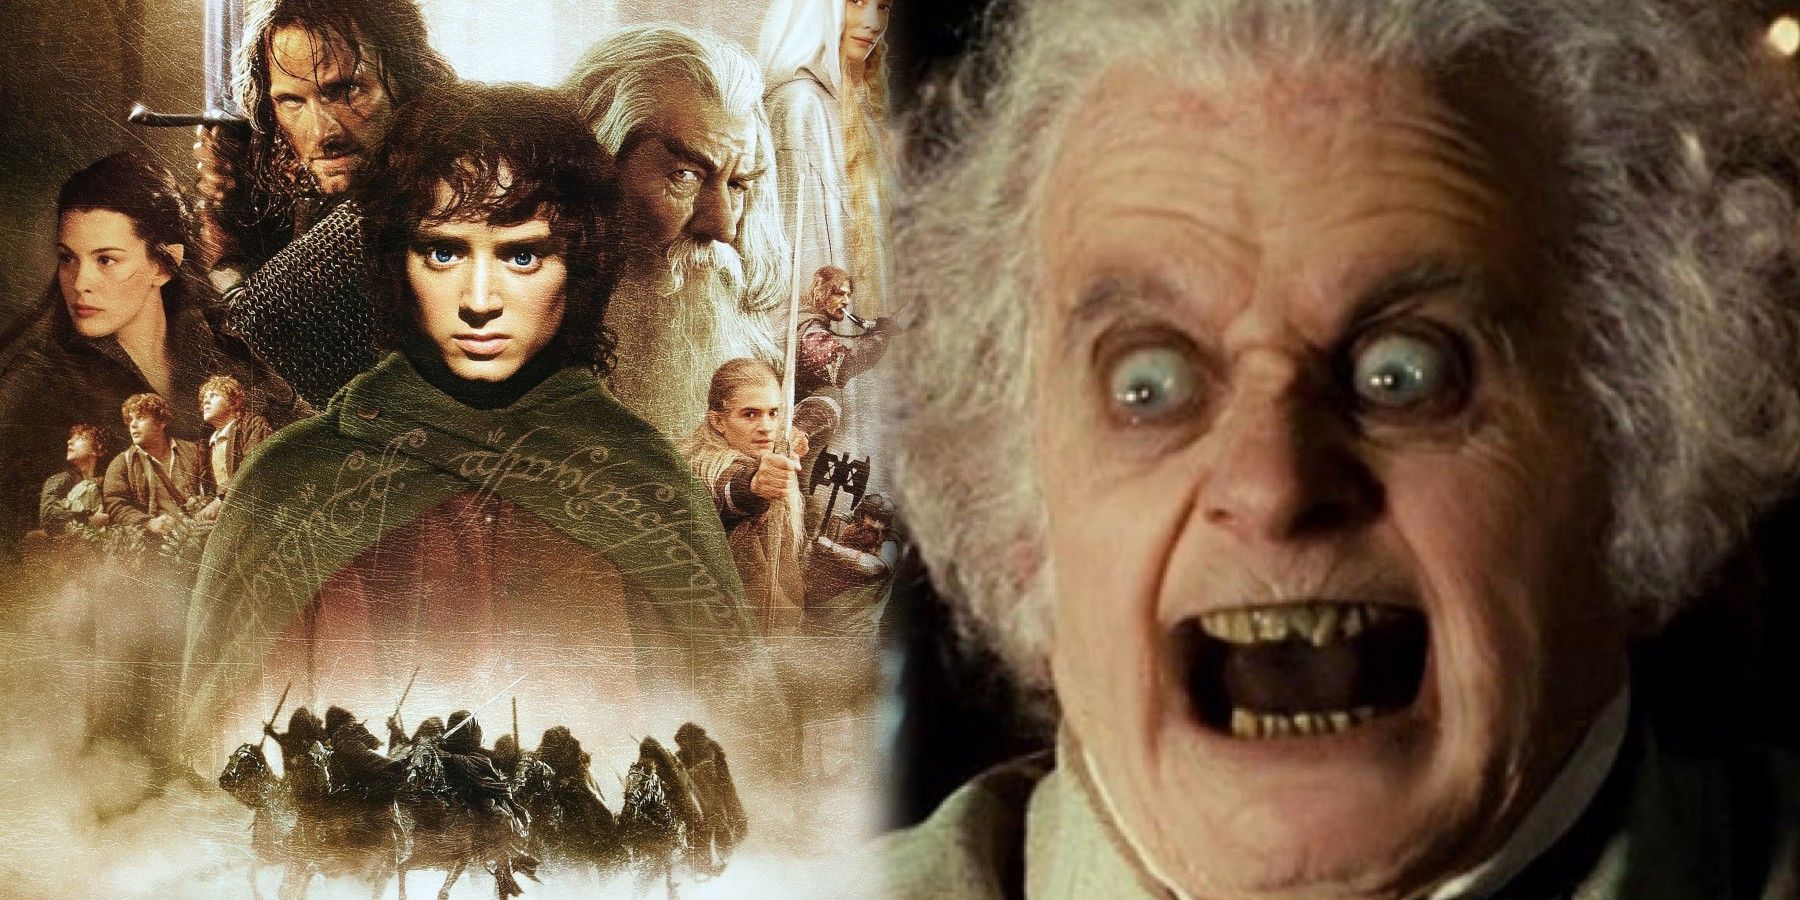 Komik Video, Korkunç Yüzüklerin Efendisi Bilbo Sahnesini Yeniden Canlandırıyor